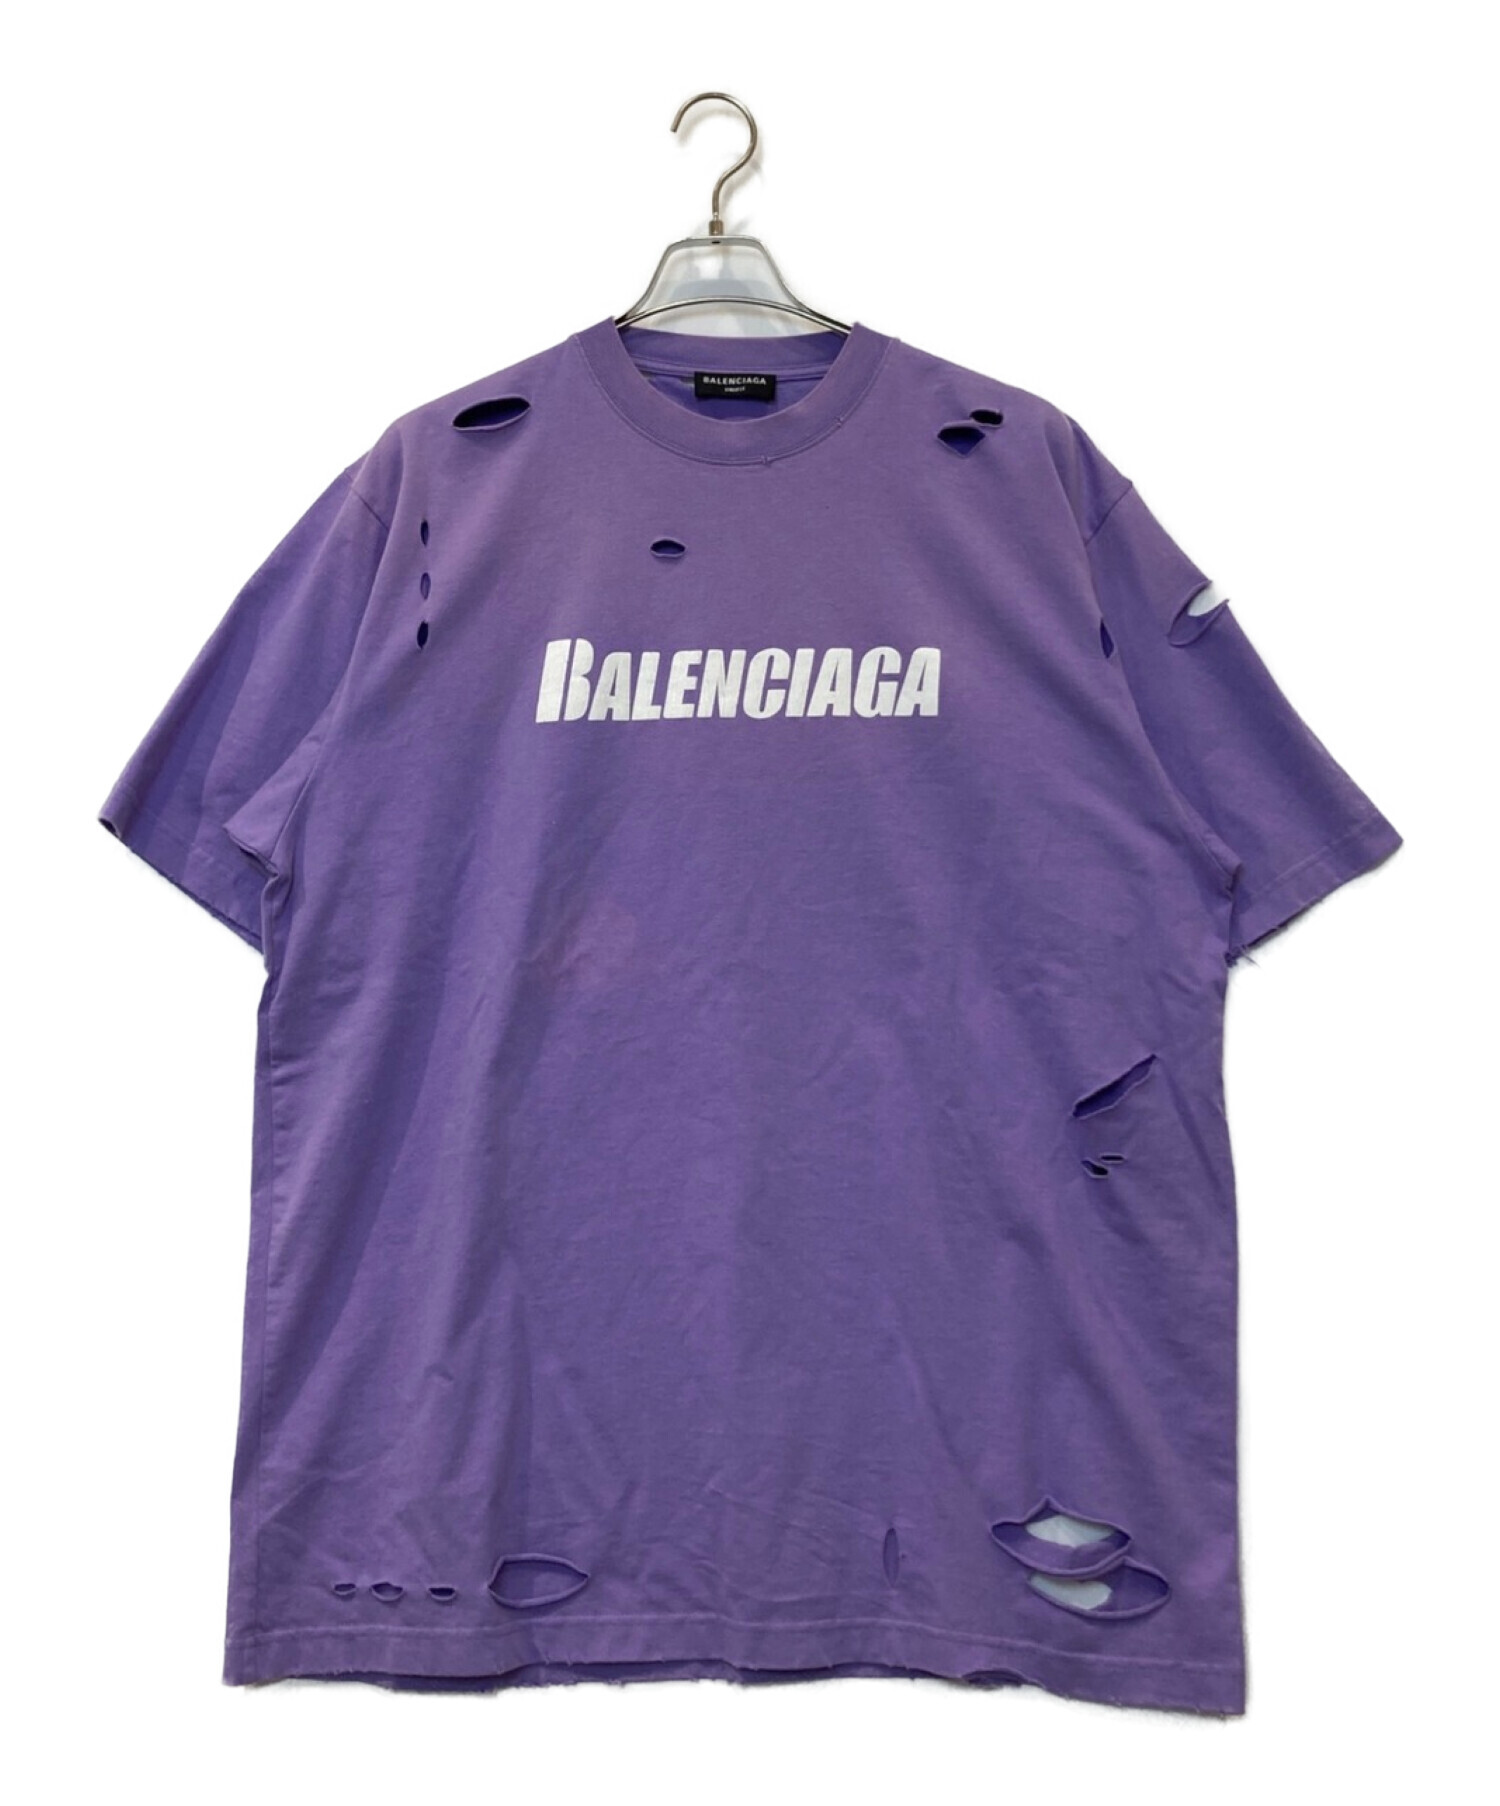 バレンシアガ BALENCIAGA デストロイ加工Tシャツ パープルサイズXXS